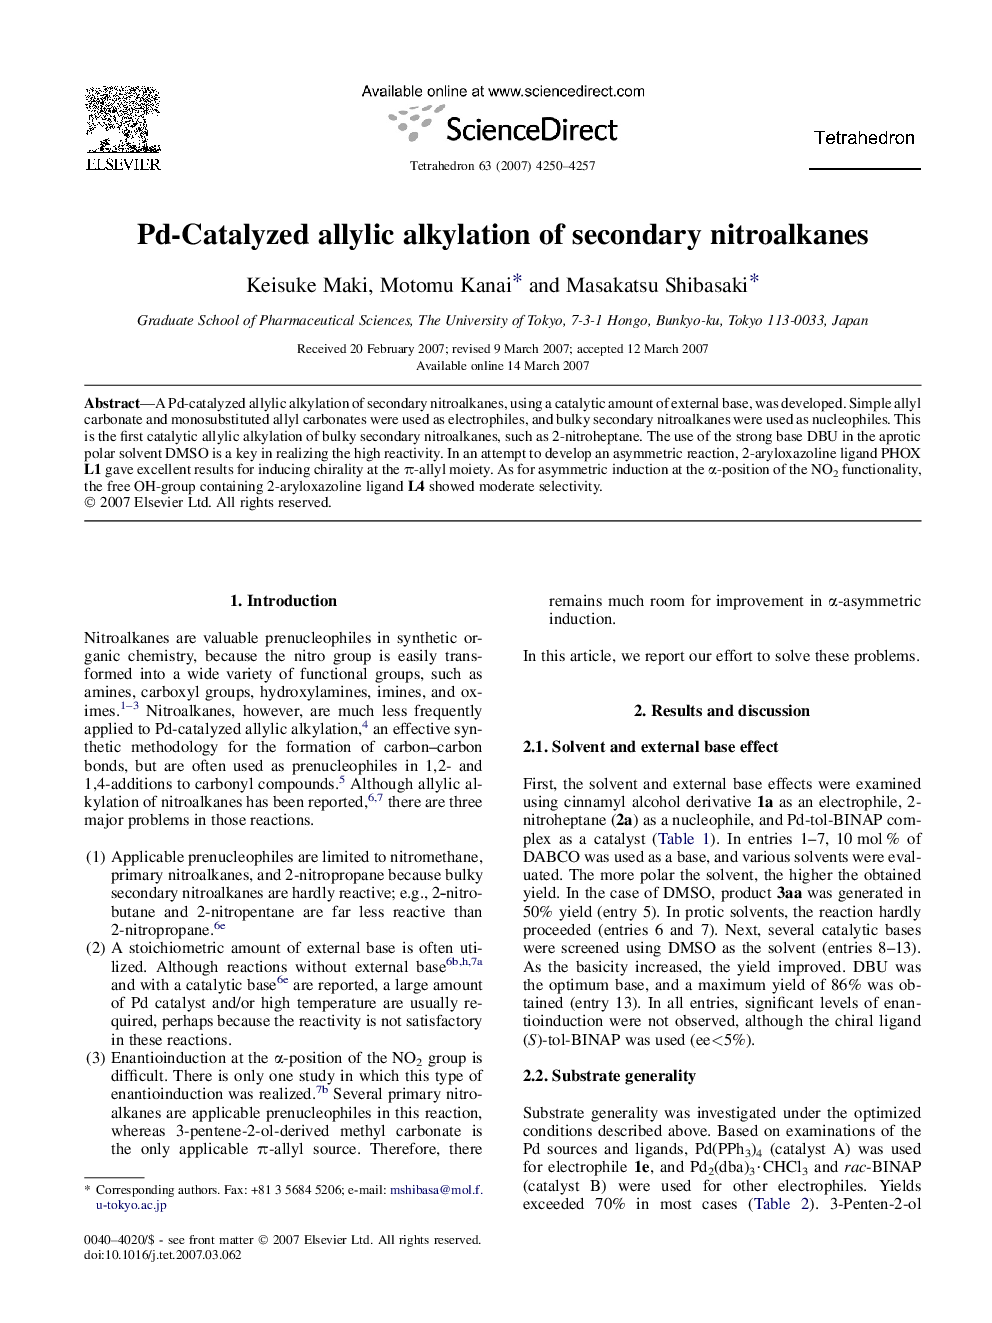 Pd-Catalyzed allylic alkylation of secondary nitroalkanes